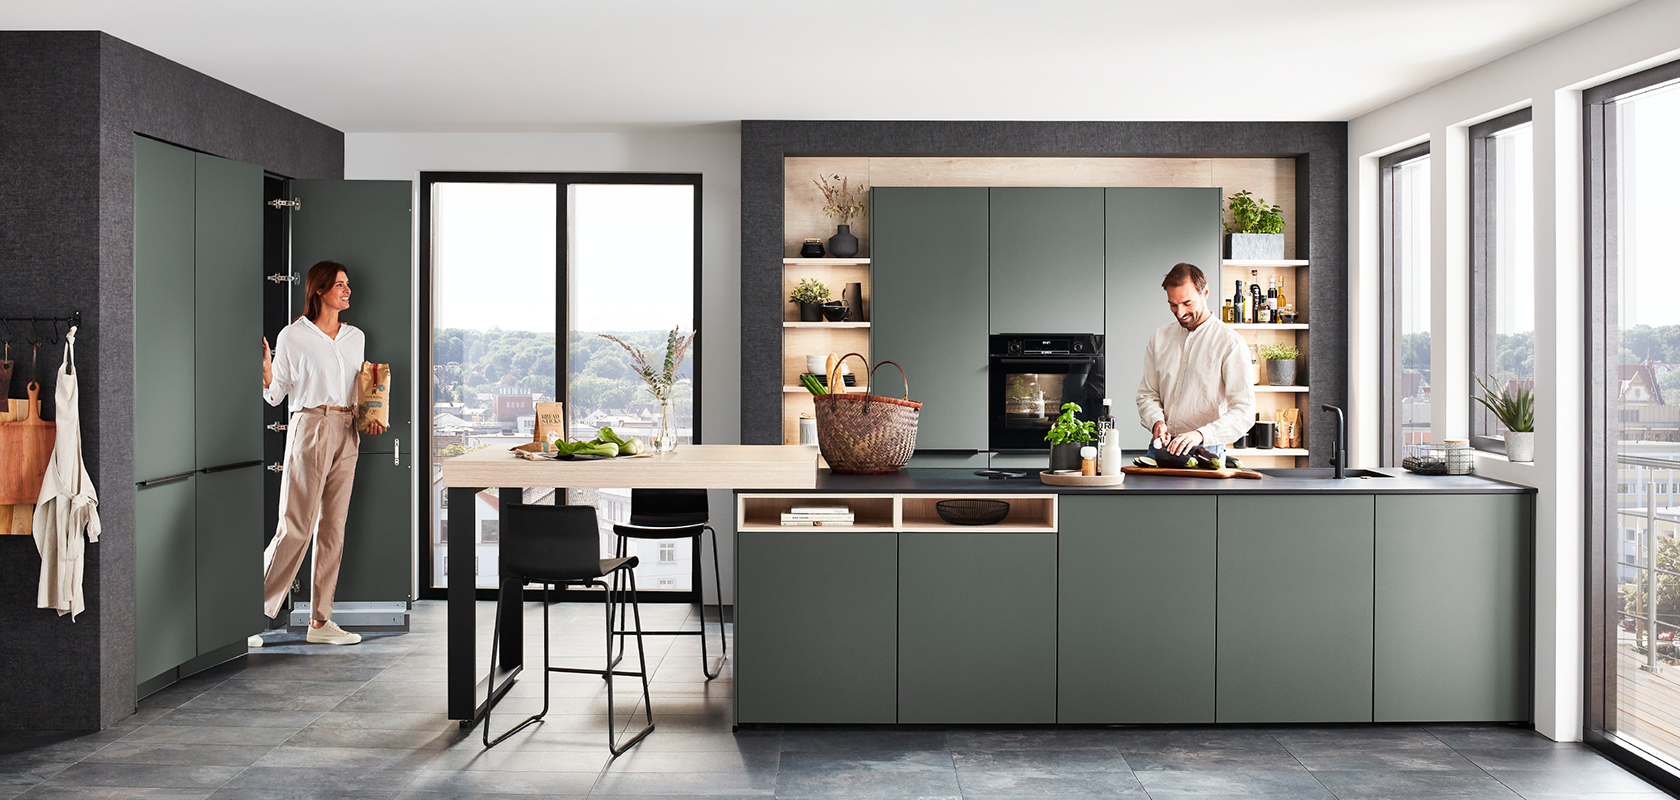 Diseño de cocina contemporáneo con elegantes gabinetes verdes, una isla central con asientos y electrodomésticos modernos, realzado por la luz natural de ventanas amplias.